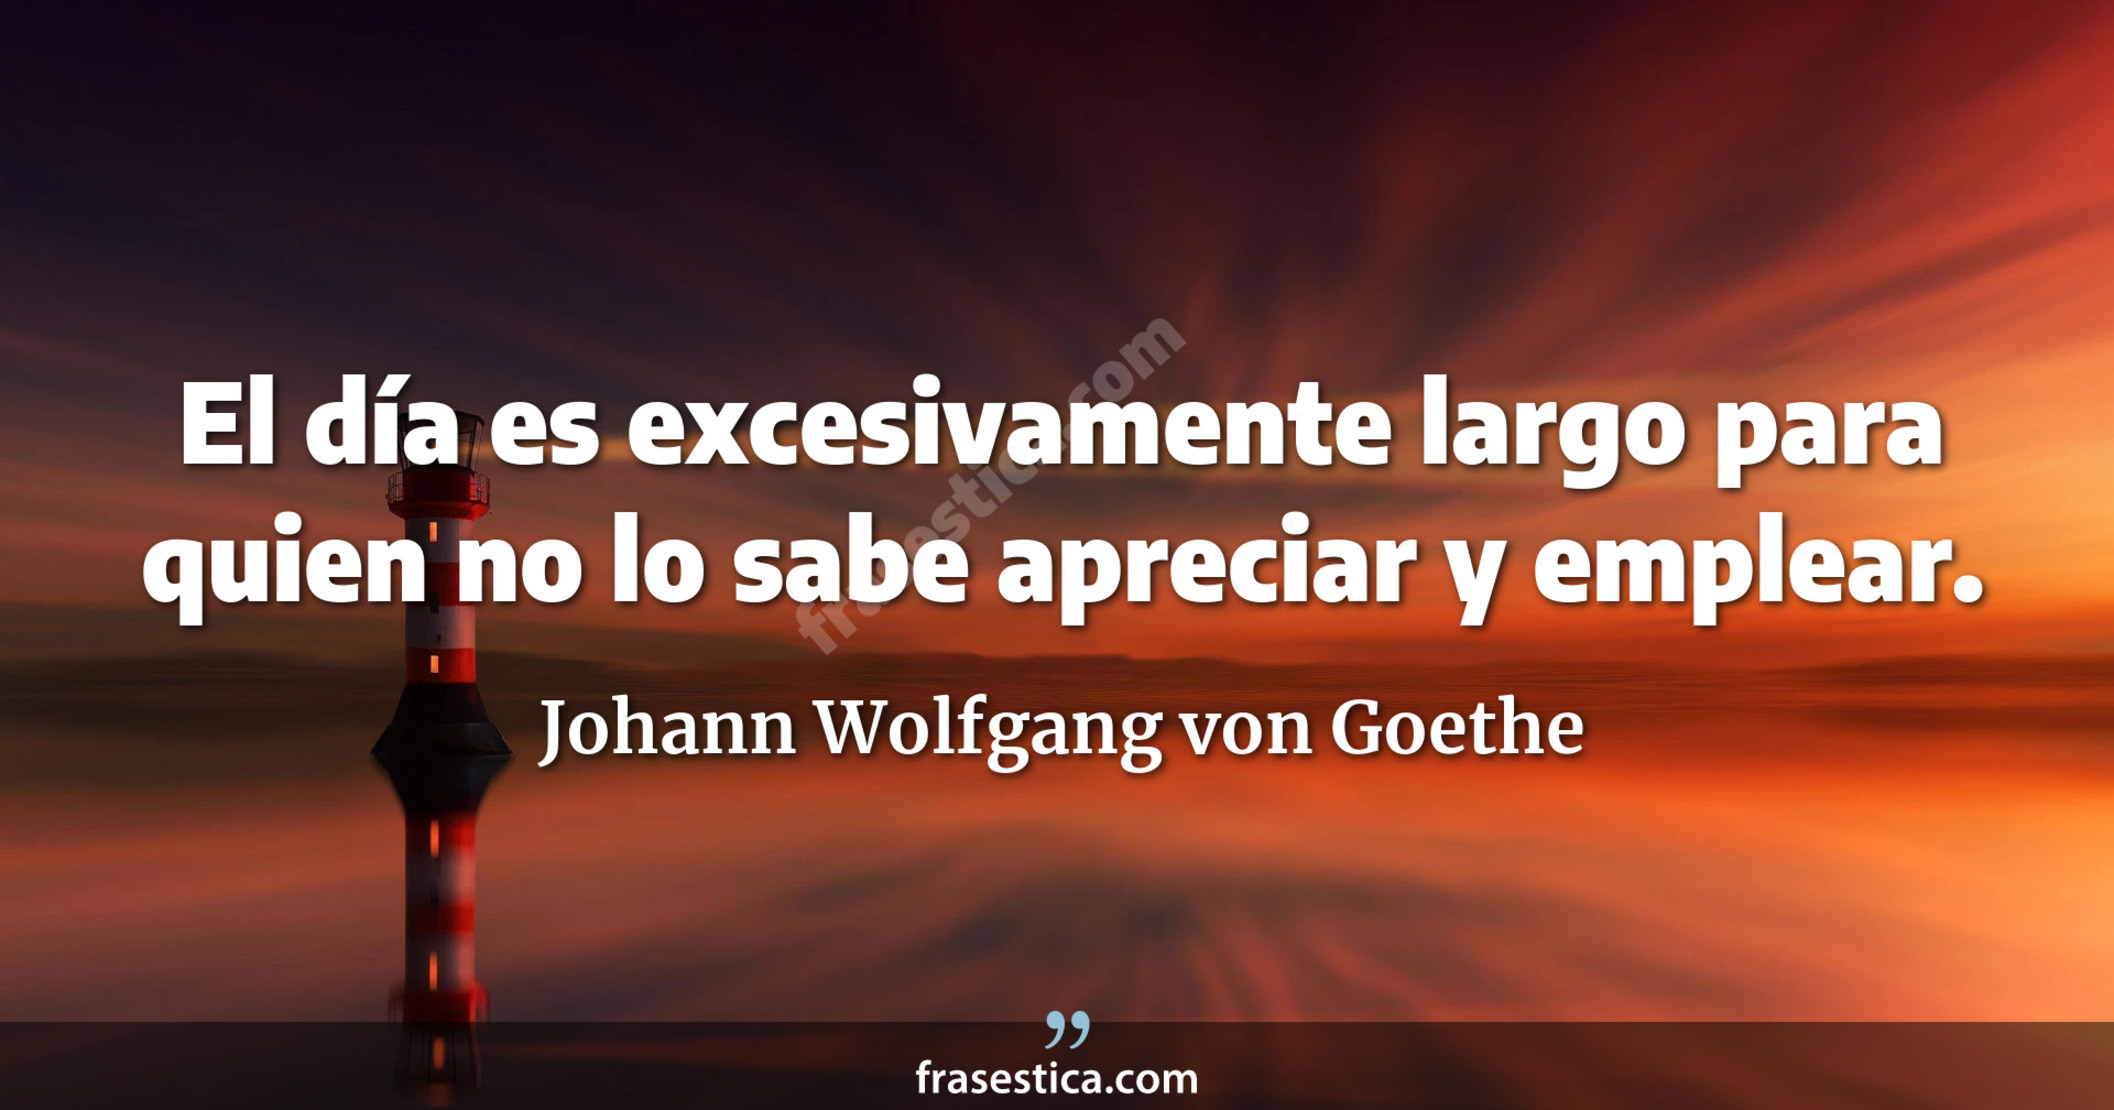 El día es excesivamente largo para quien no lo sabe apreciar y emplear. - Johann Wolfgang von Goethe